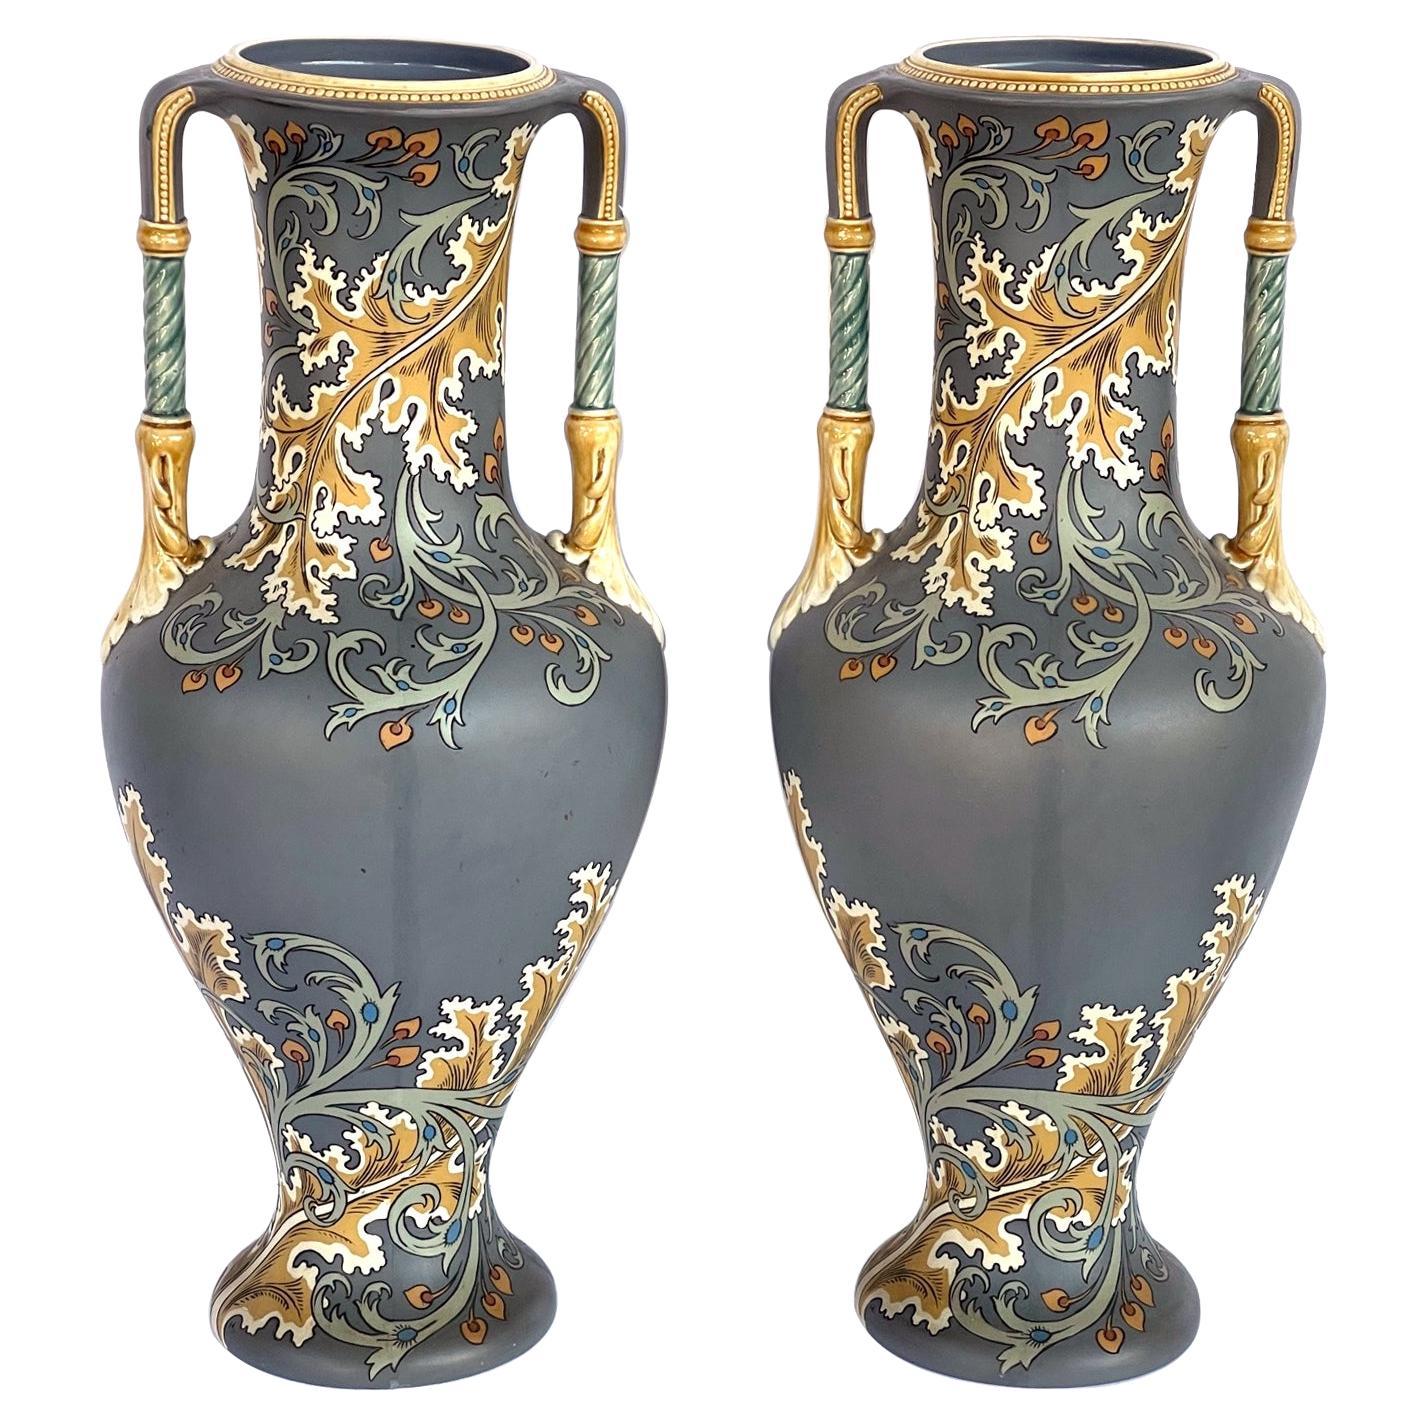 Paire de vases Art nouveau Mettlach avec marques incisées sur la face inférieure